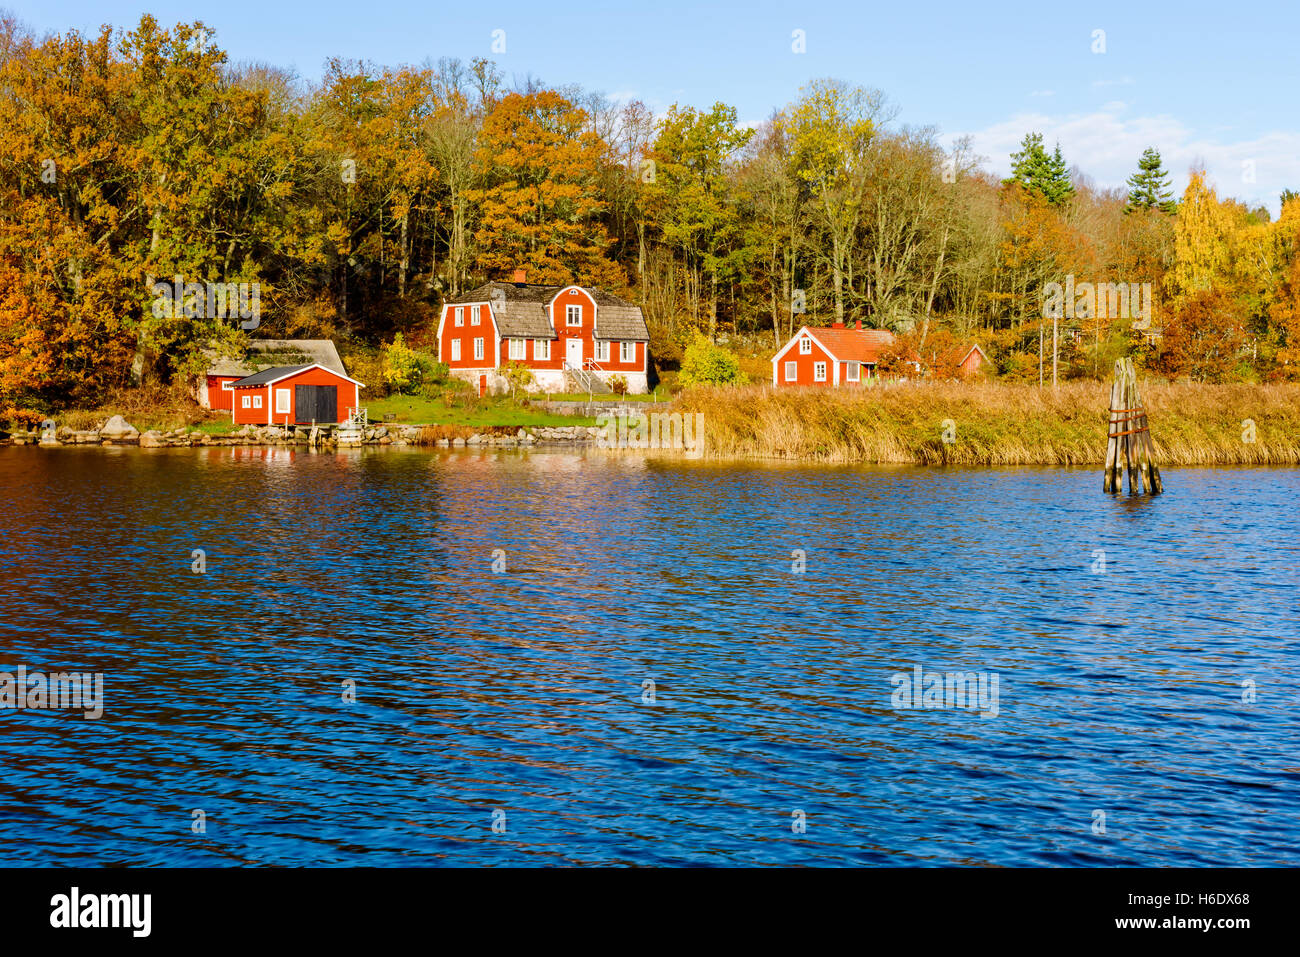 Jarnavik, Suecia - 25 de octubre de 2016: Documental Ambiental de la vida en la costa. Casa de madera roja en otoño colorido paisaje Foto de stock